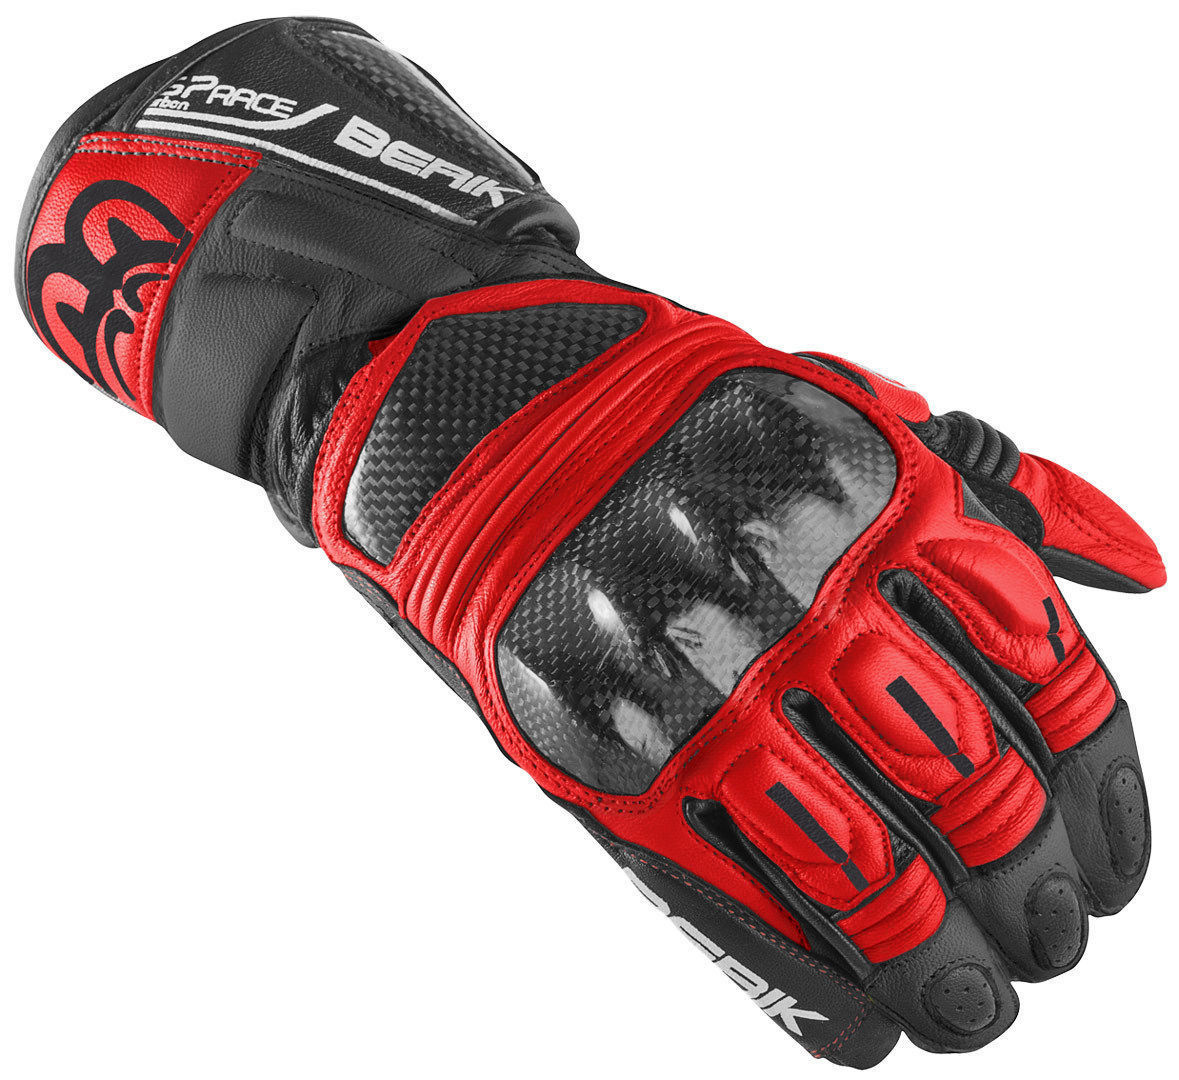 Мотоциклетные перчатки Berik Namib Pro с усиленной боковиной, черный/красный мотоциклетные перчатки namib pro berik черный белый красный